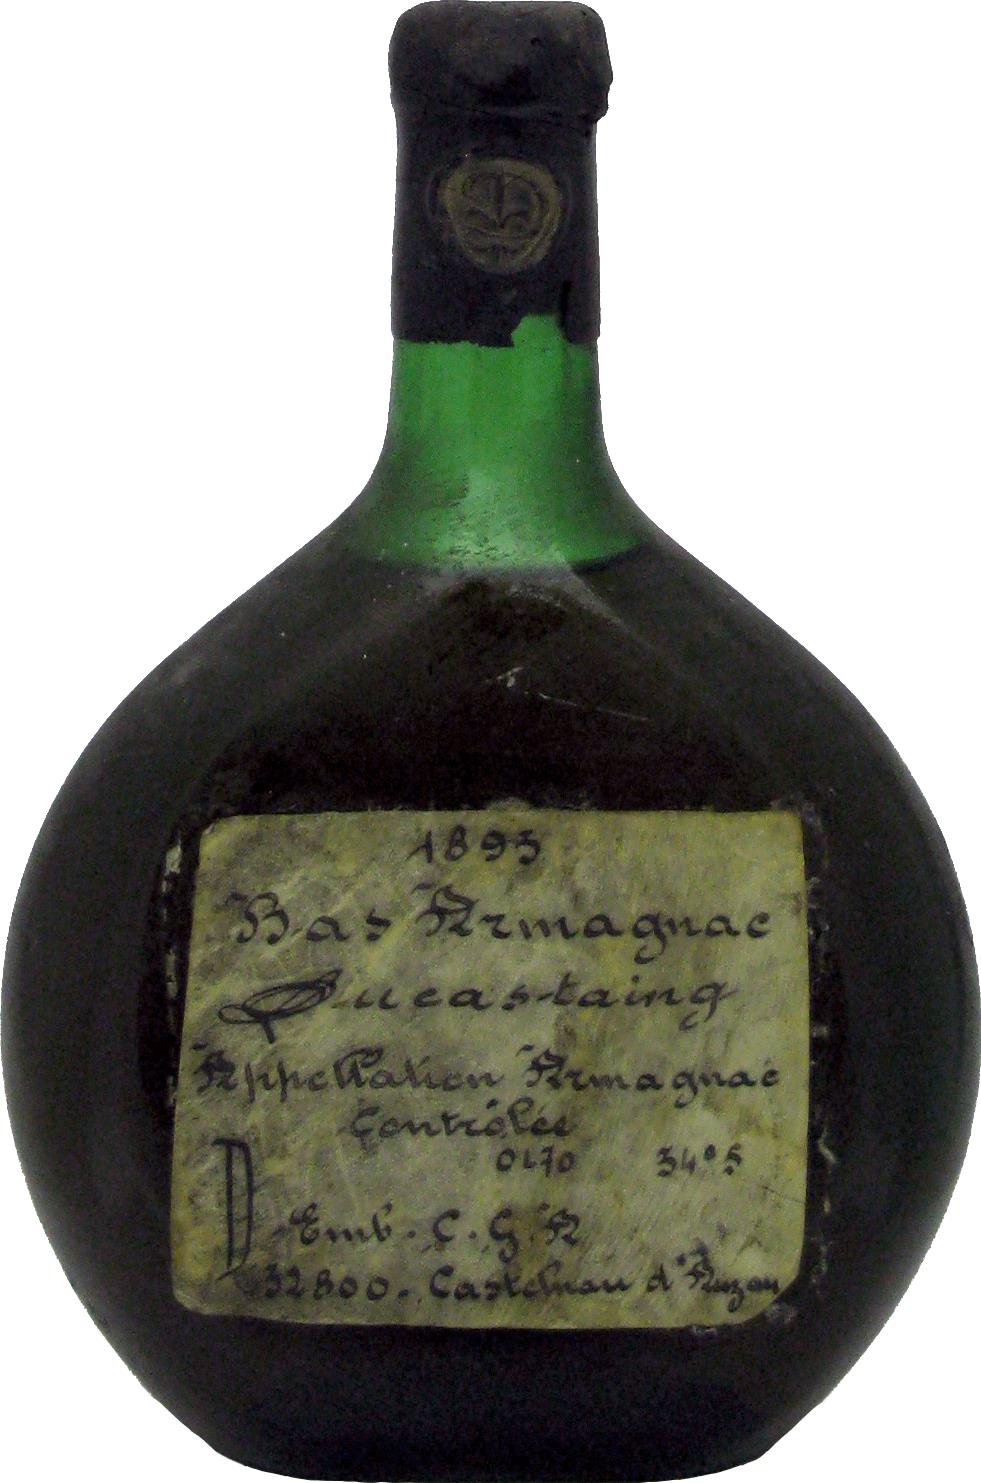 Bas-Armagnac Ducastaing 1893 Vintage Cognac - Rue Pinard